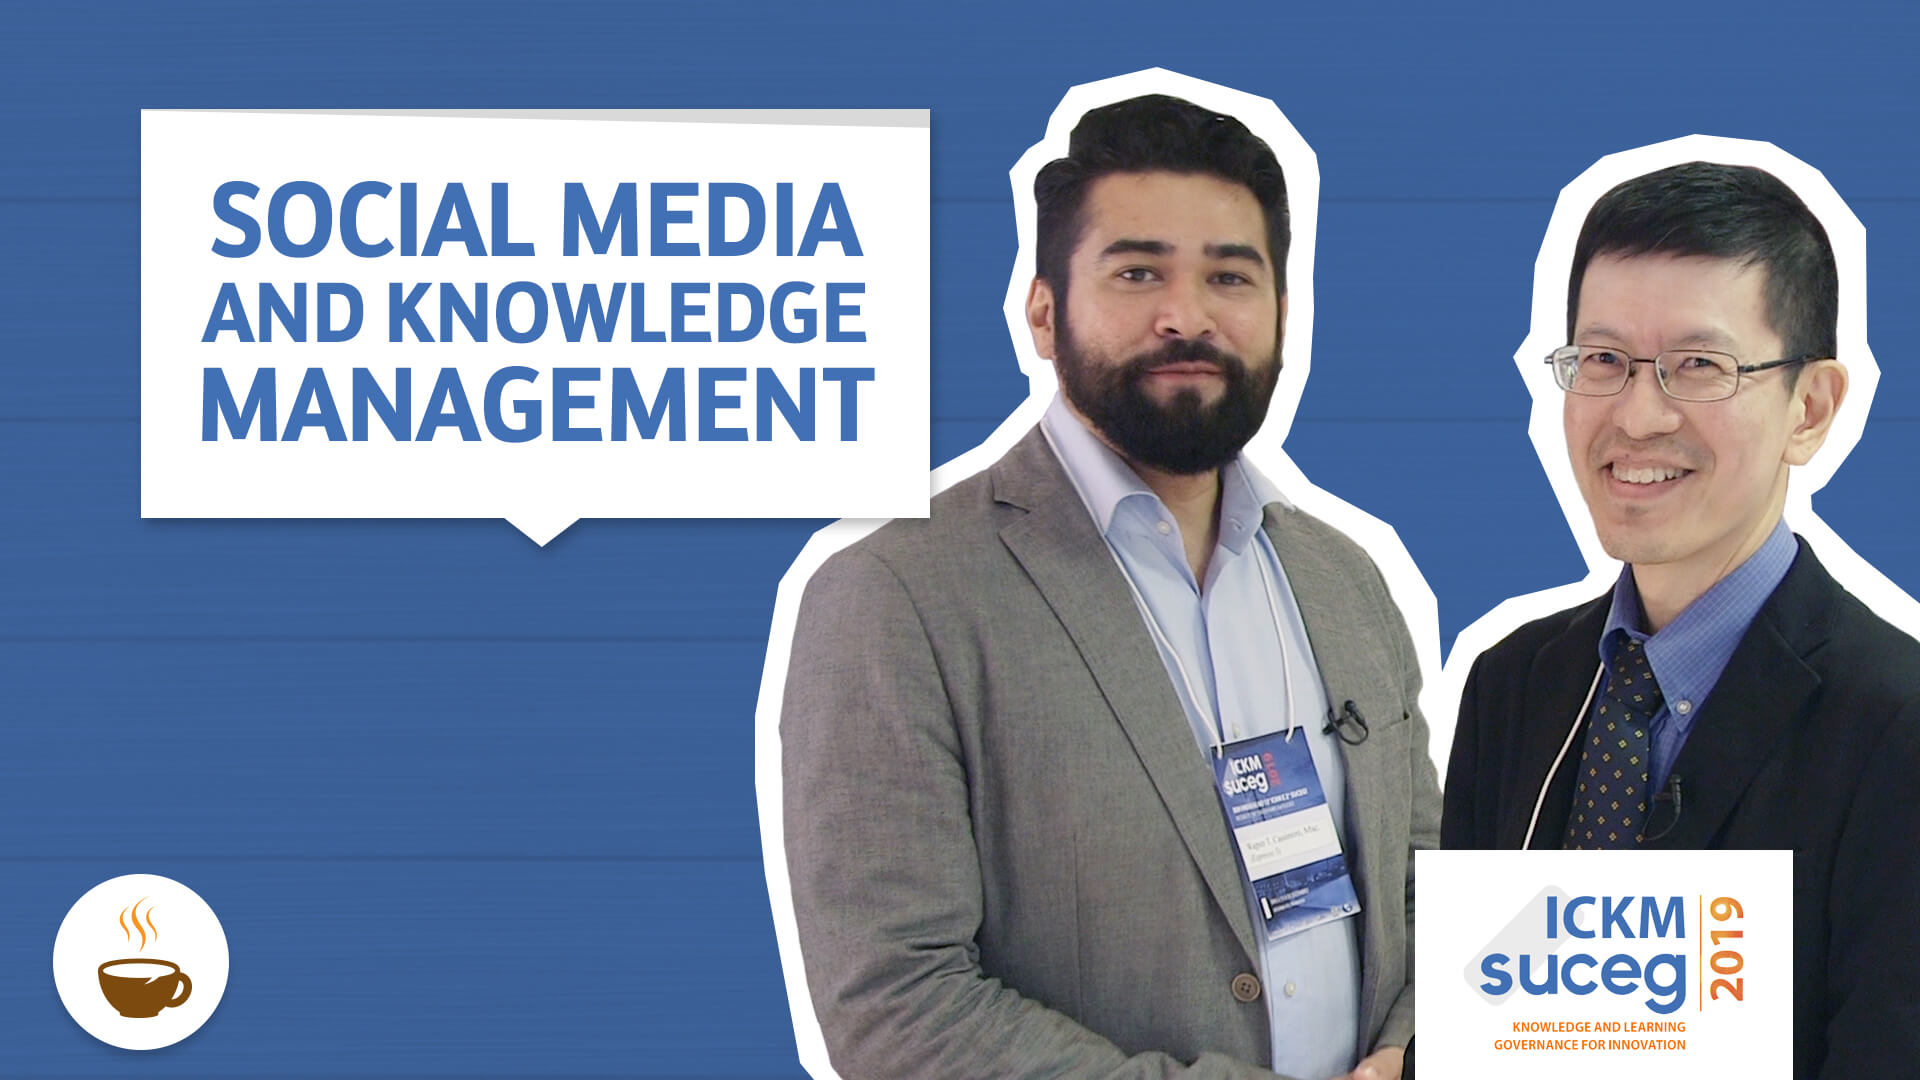 Prof. Wagner Cassimiro entrevista Alton Chua sobre mídias sociais e gestão do conhecimento. 